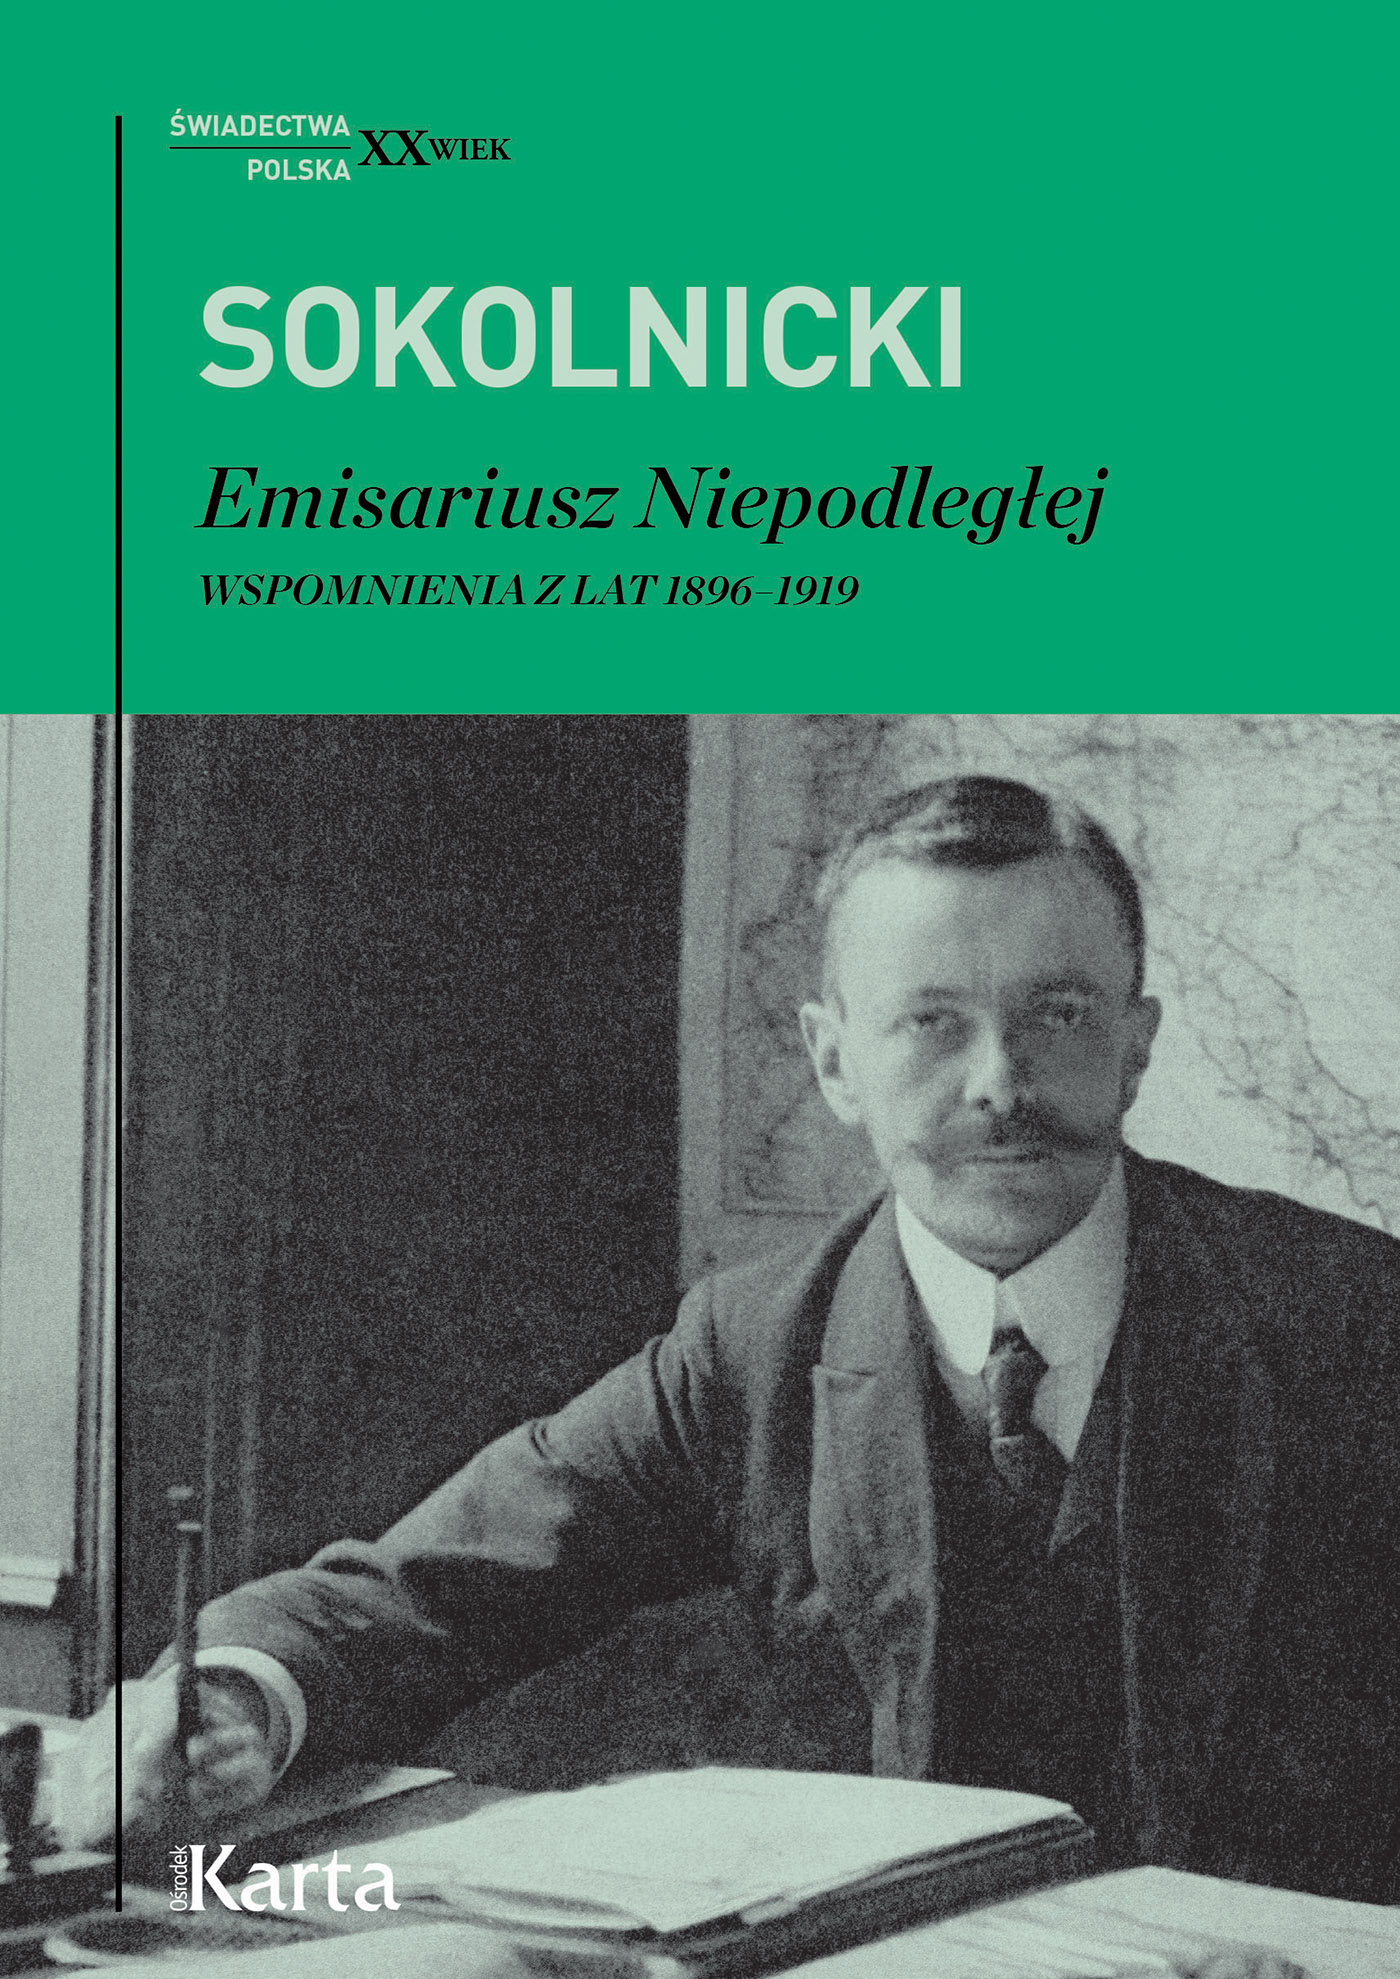 Okładka:Michał Sokolnicki. Emisariusz Niepodległej. Wspomnienia z lat 1896-1919 